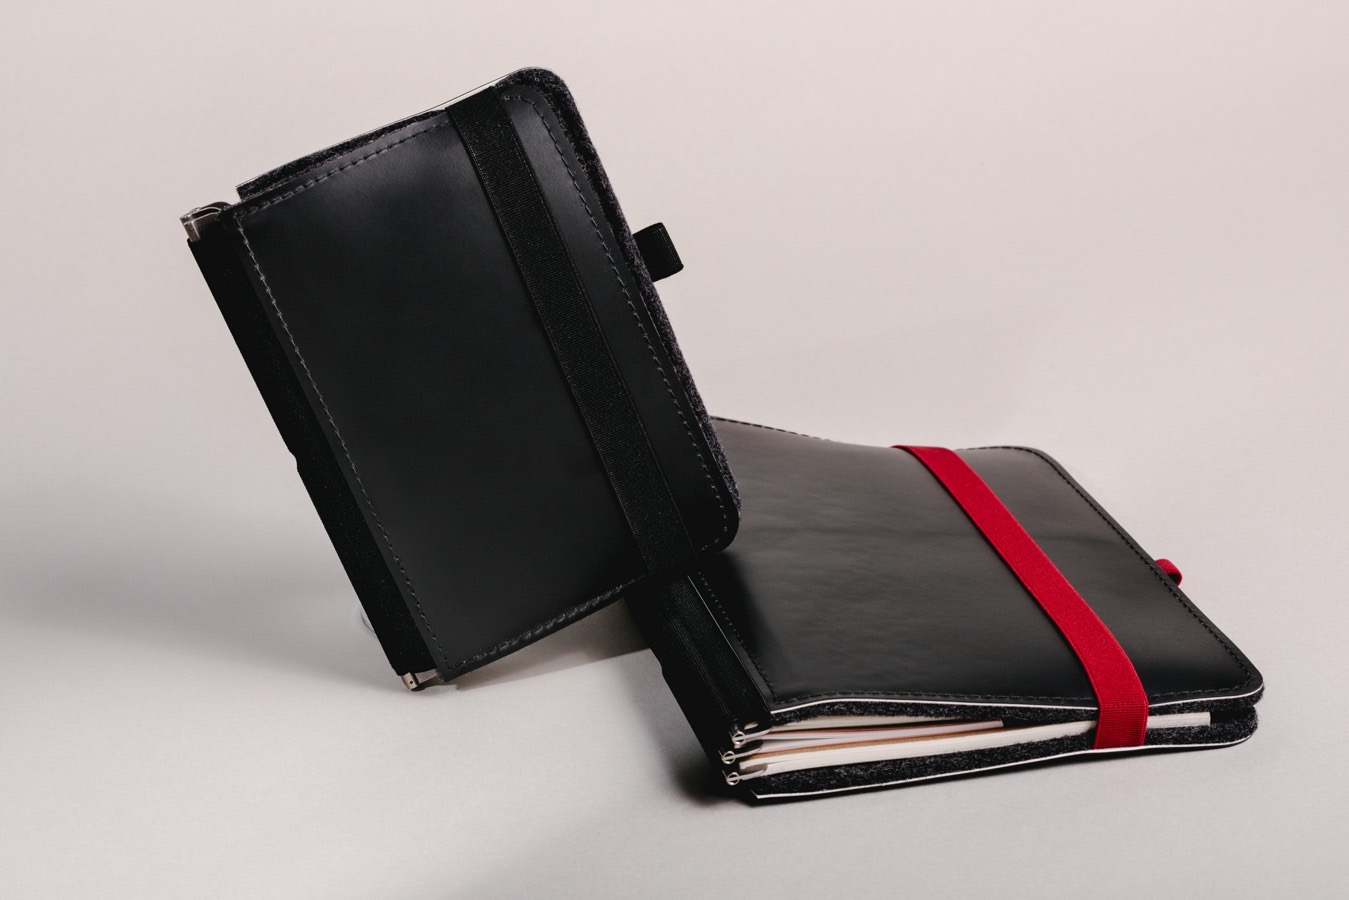  V_19 Taschenbegleiter mit rotem Verschlussband - Langlebig und vielseitig.